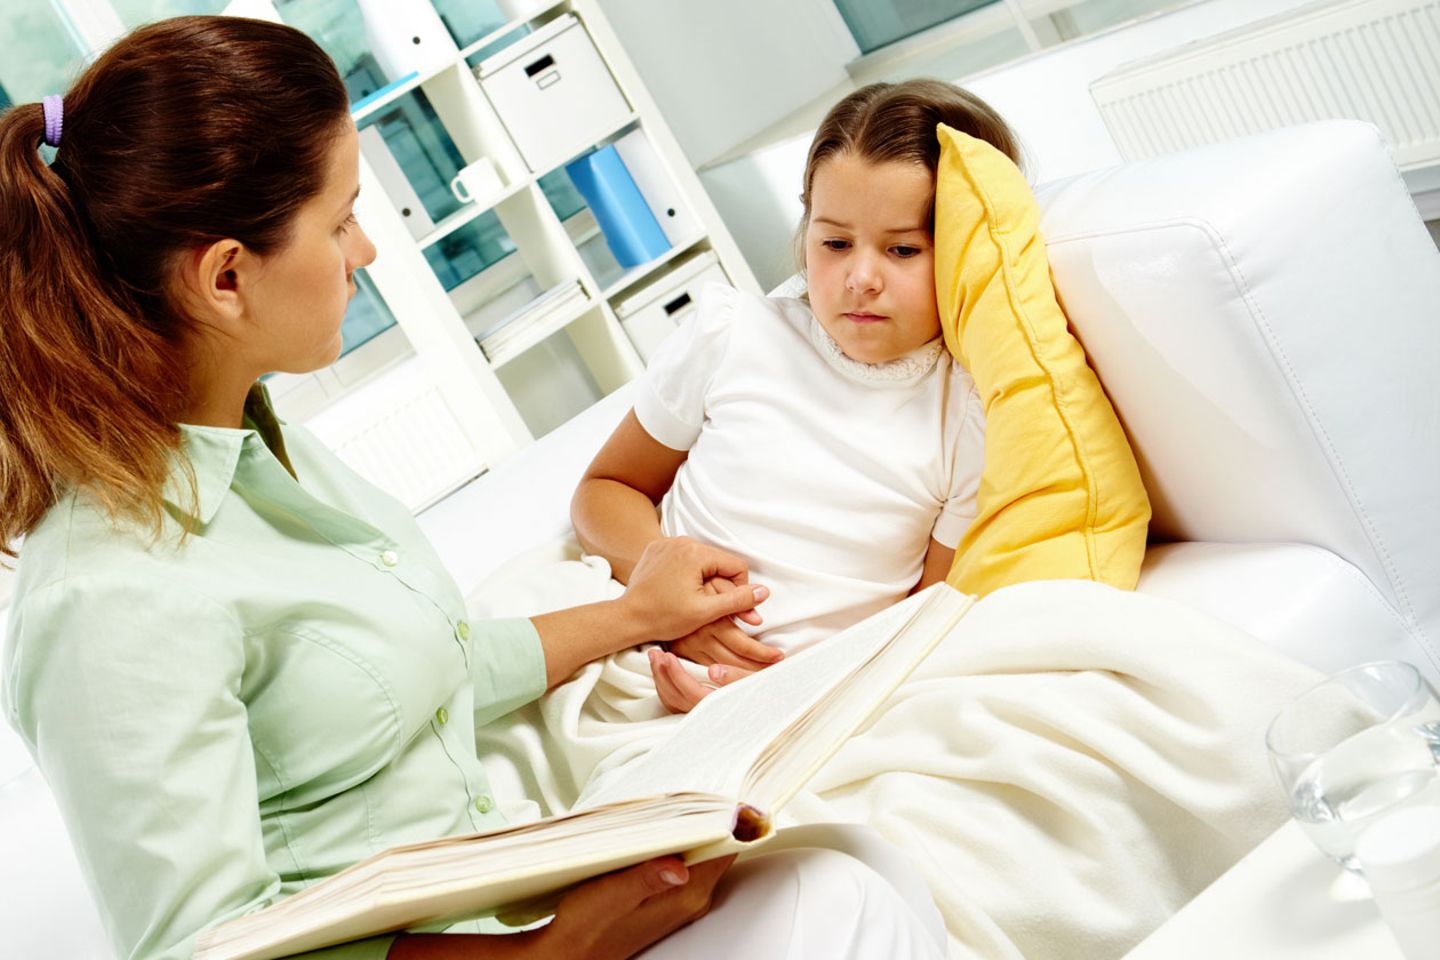 Reden Sie regelmäßig mit Ihrem Kind über seine Sorgen. Das beugt Migräneattacken vor